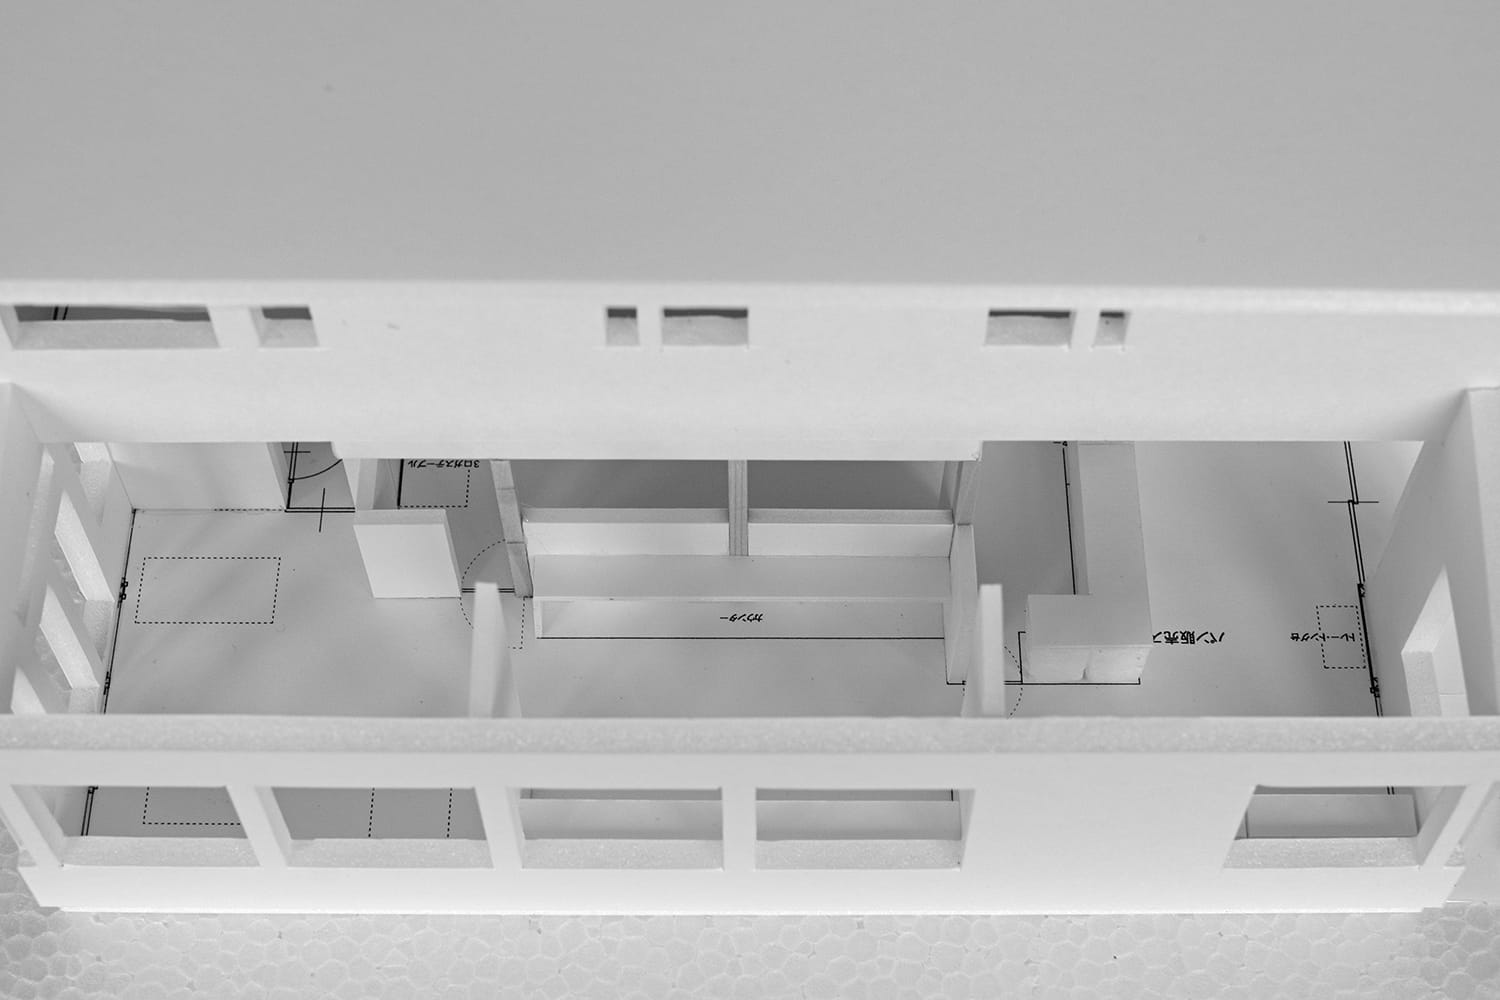 店舗兼住宅の模型の1階客席を鳥瞰（俯瞰）する